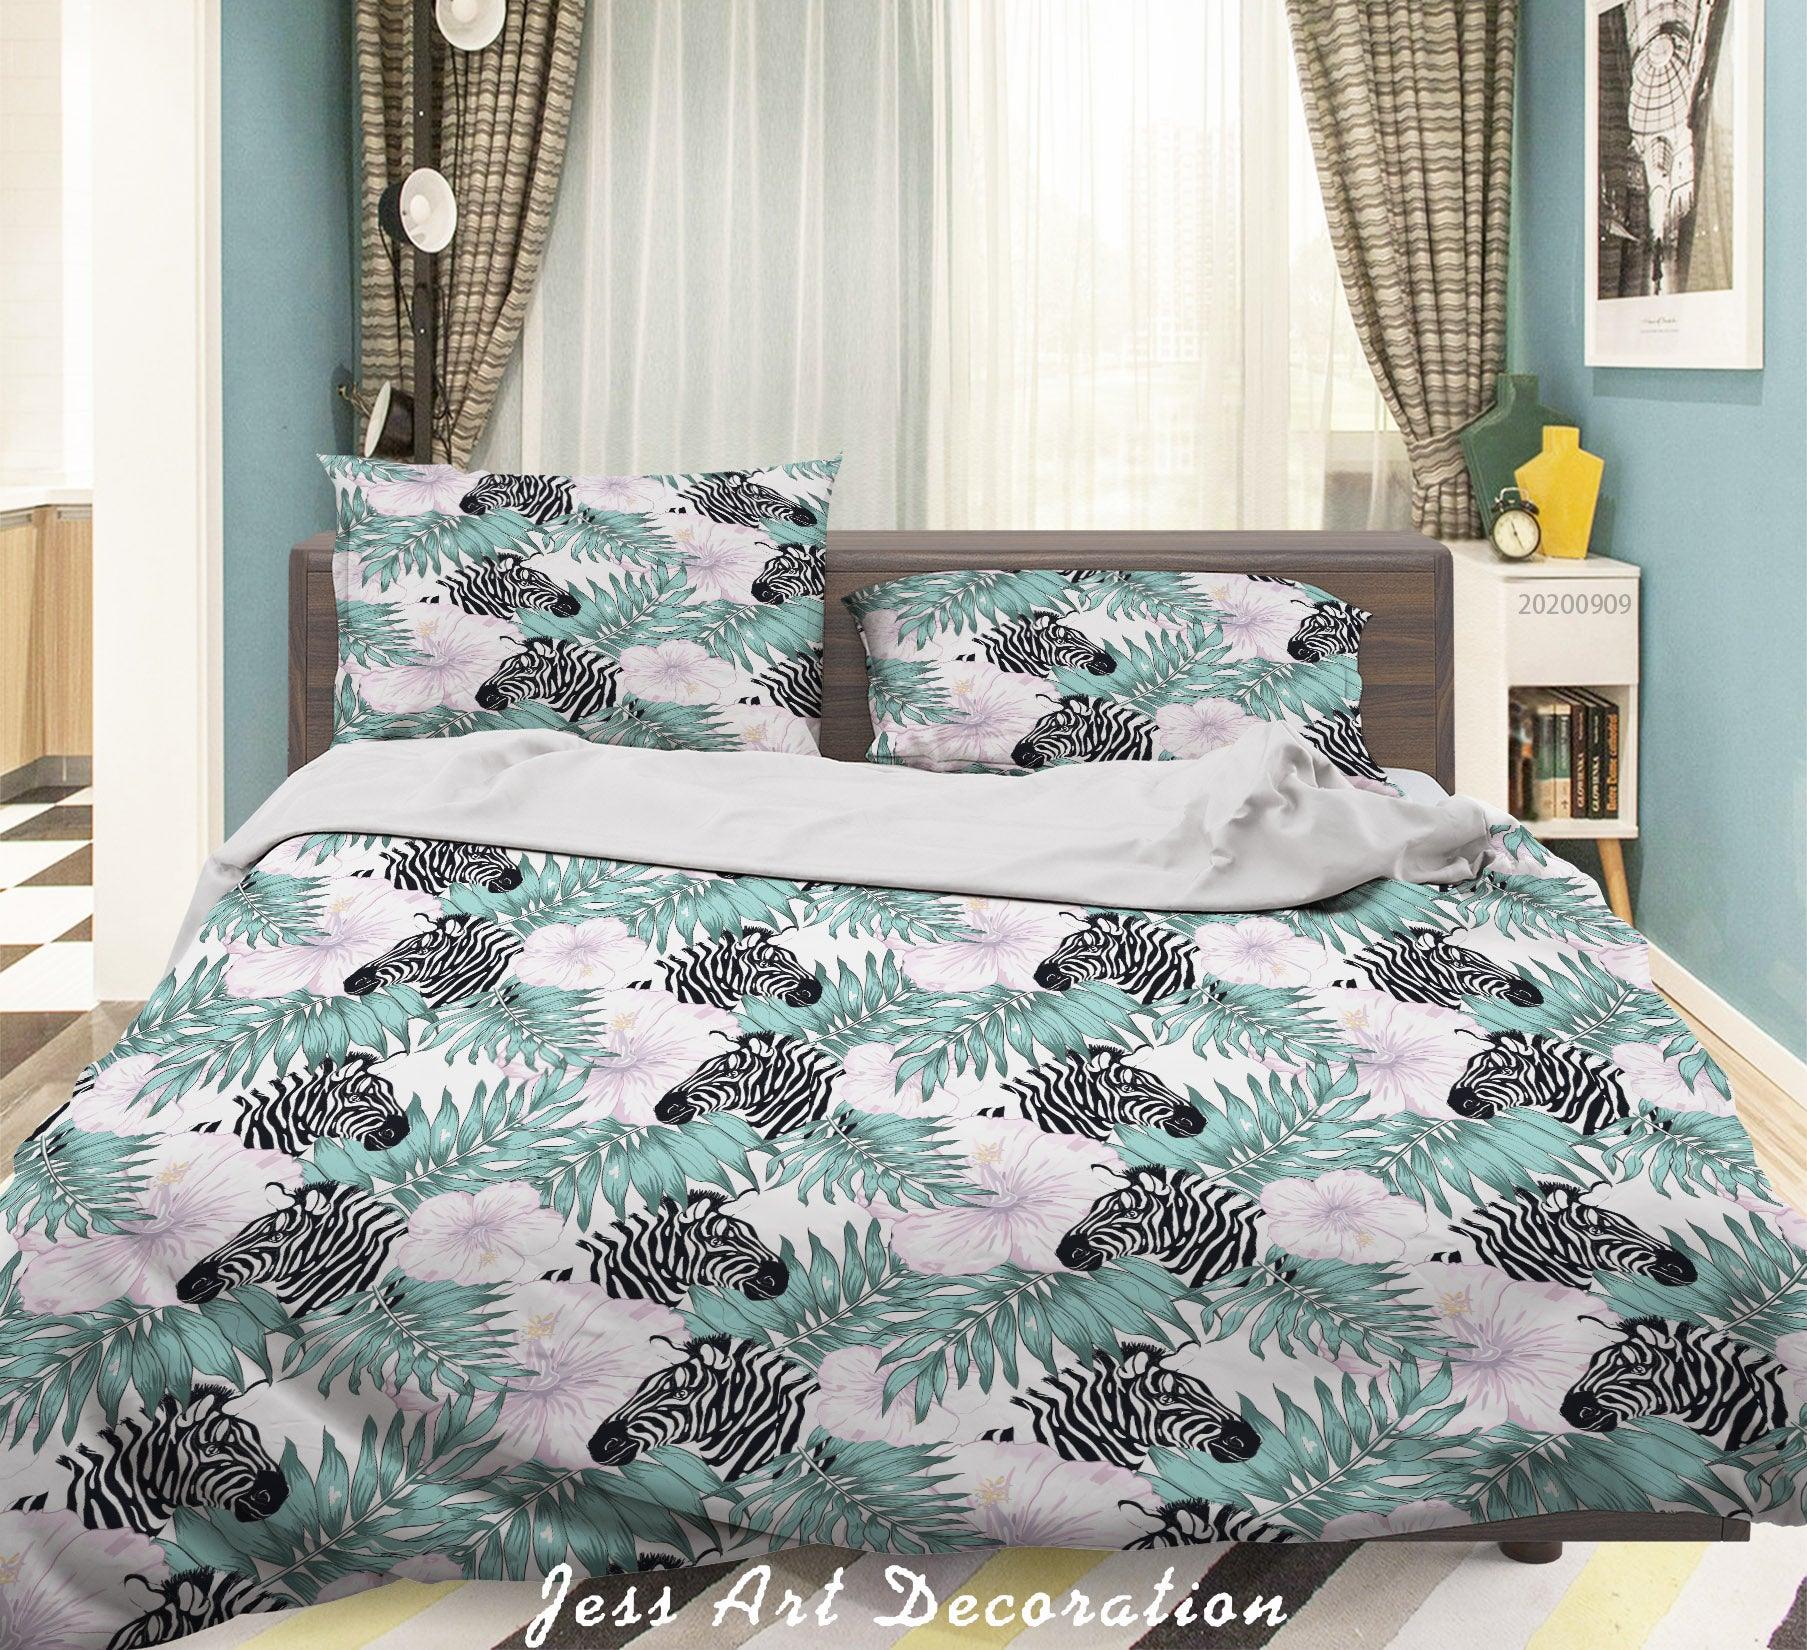 3D Zebra Leaves Pattern Quilt Cover Set Bedding Set Duvet Cover Pillowcases WJ 6041- Jess Art Decoration